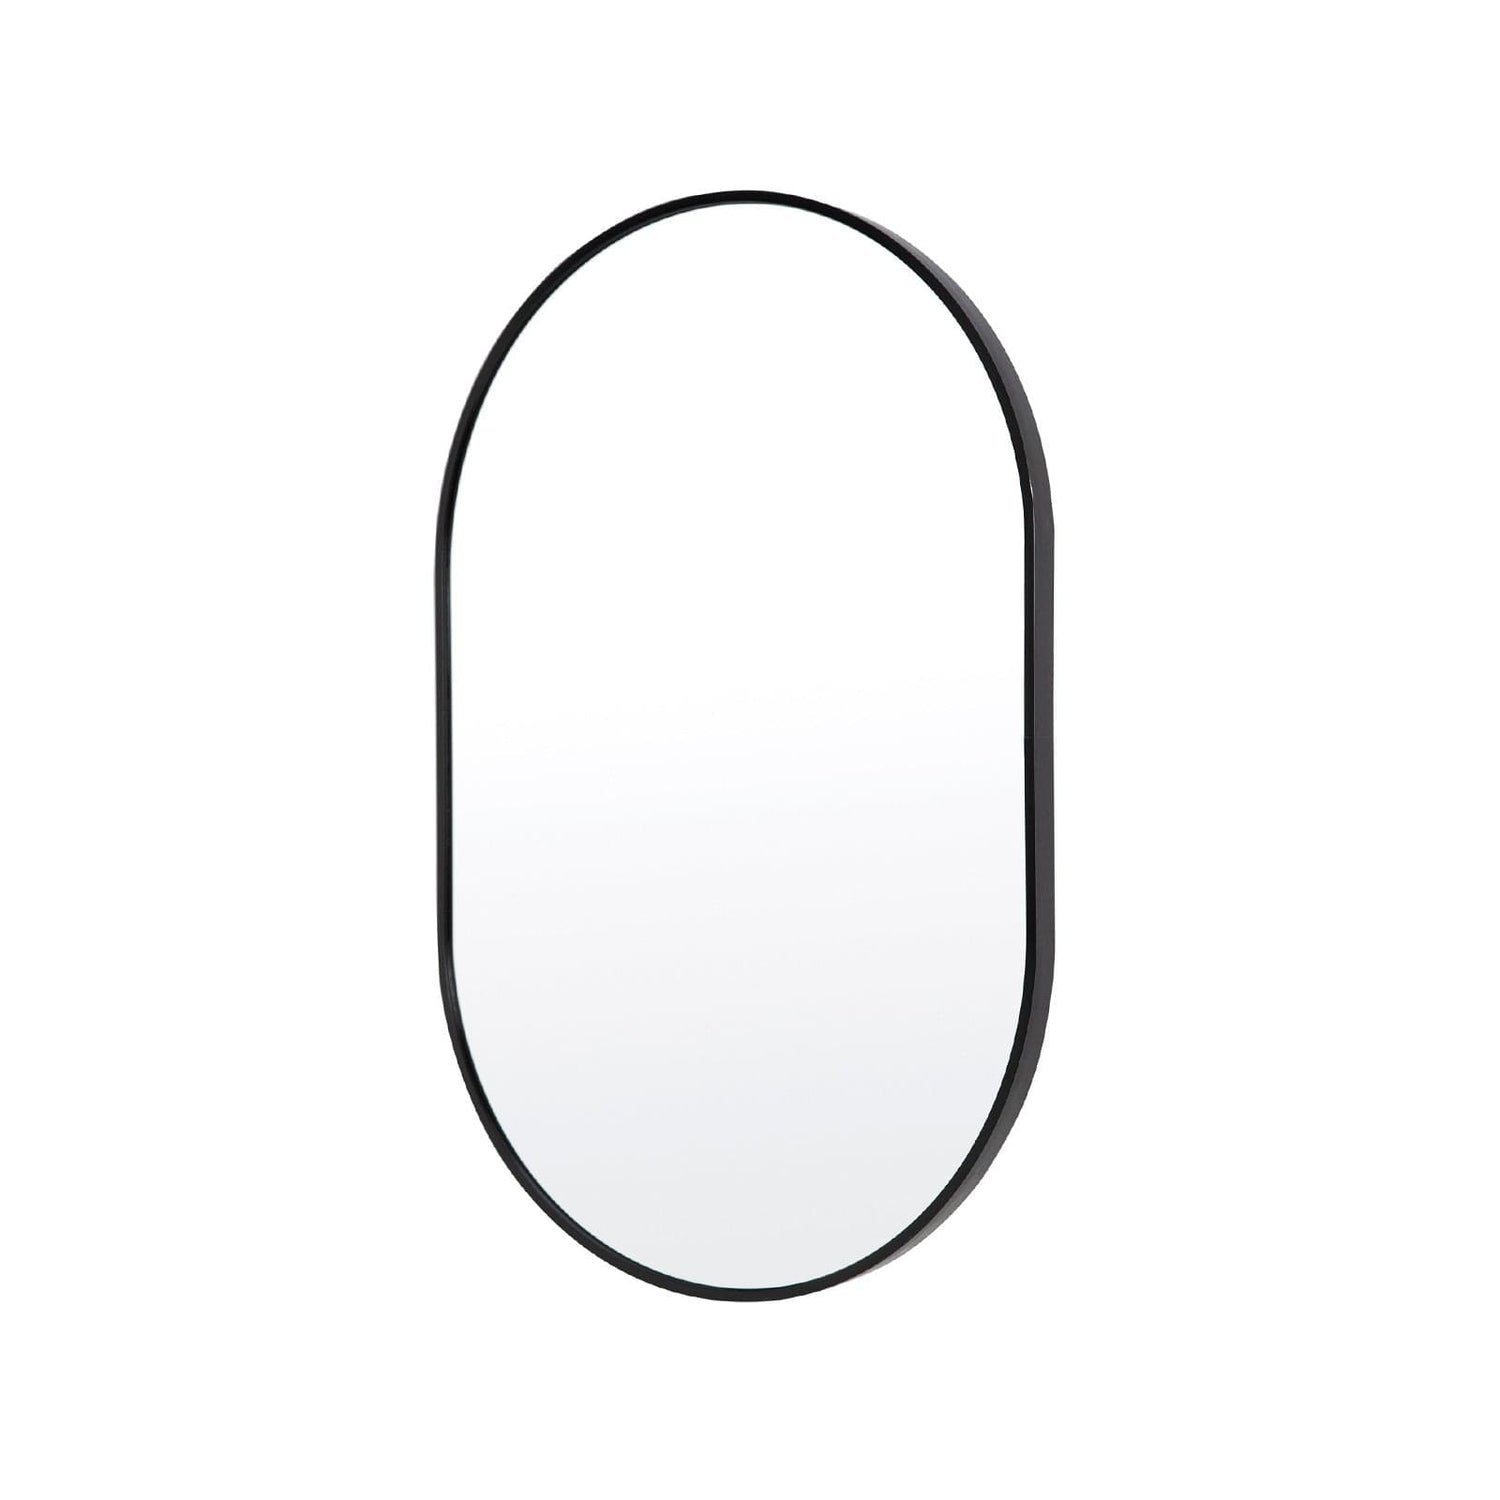 La Bella Single mirror V274-FT-BM-ALUOV-BK5075